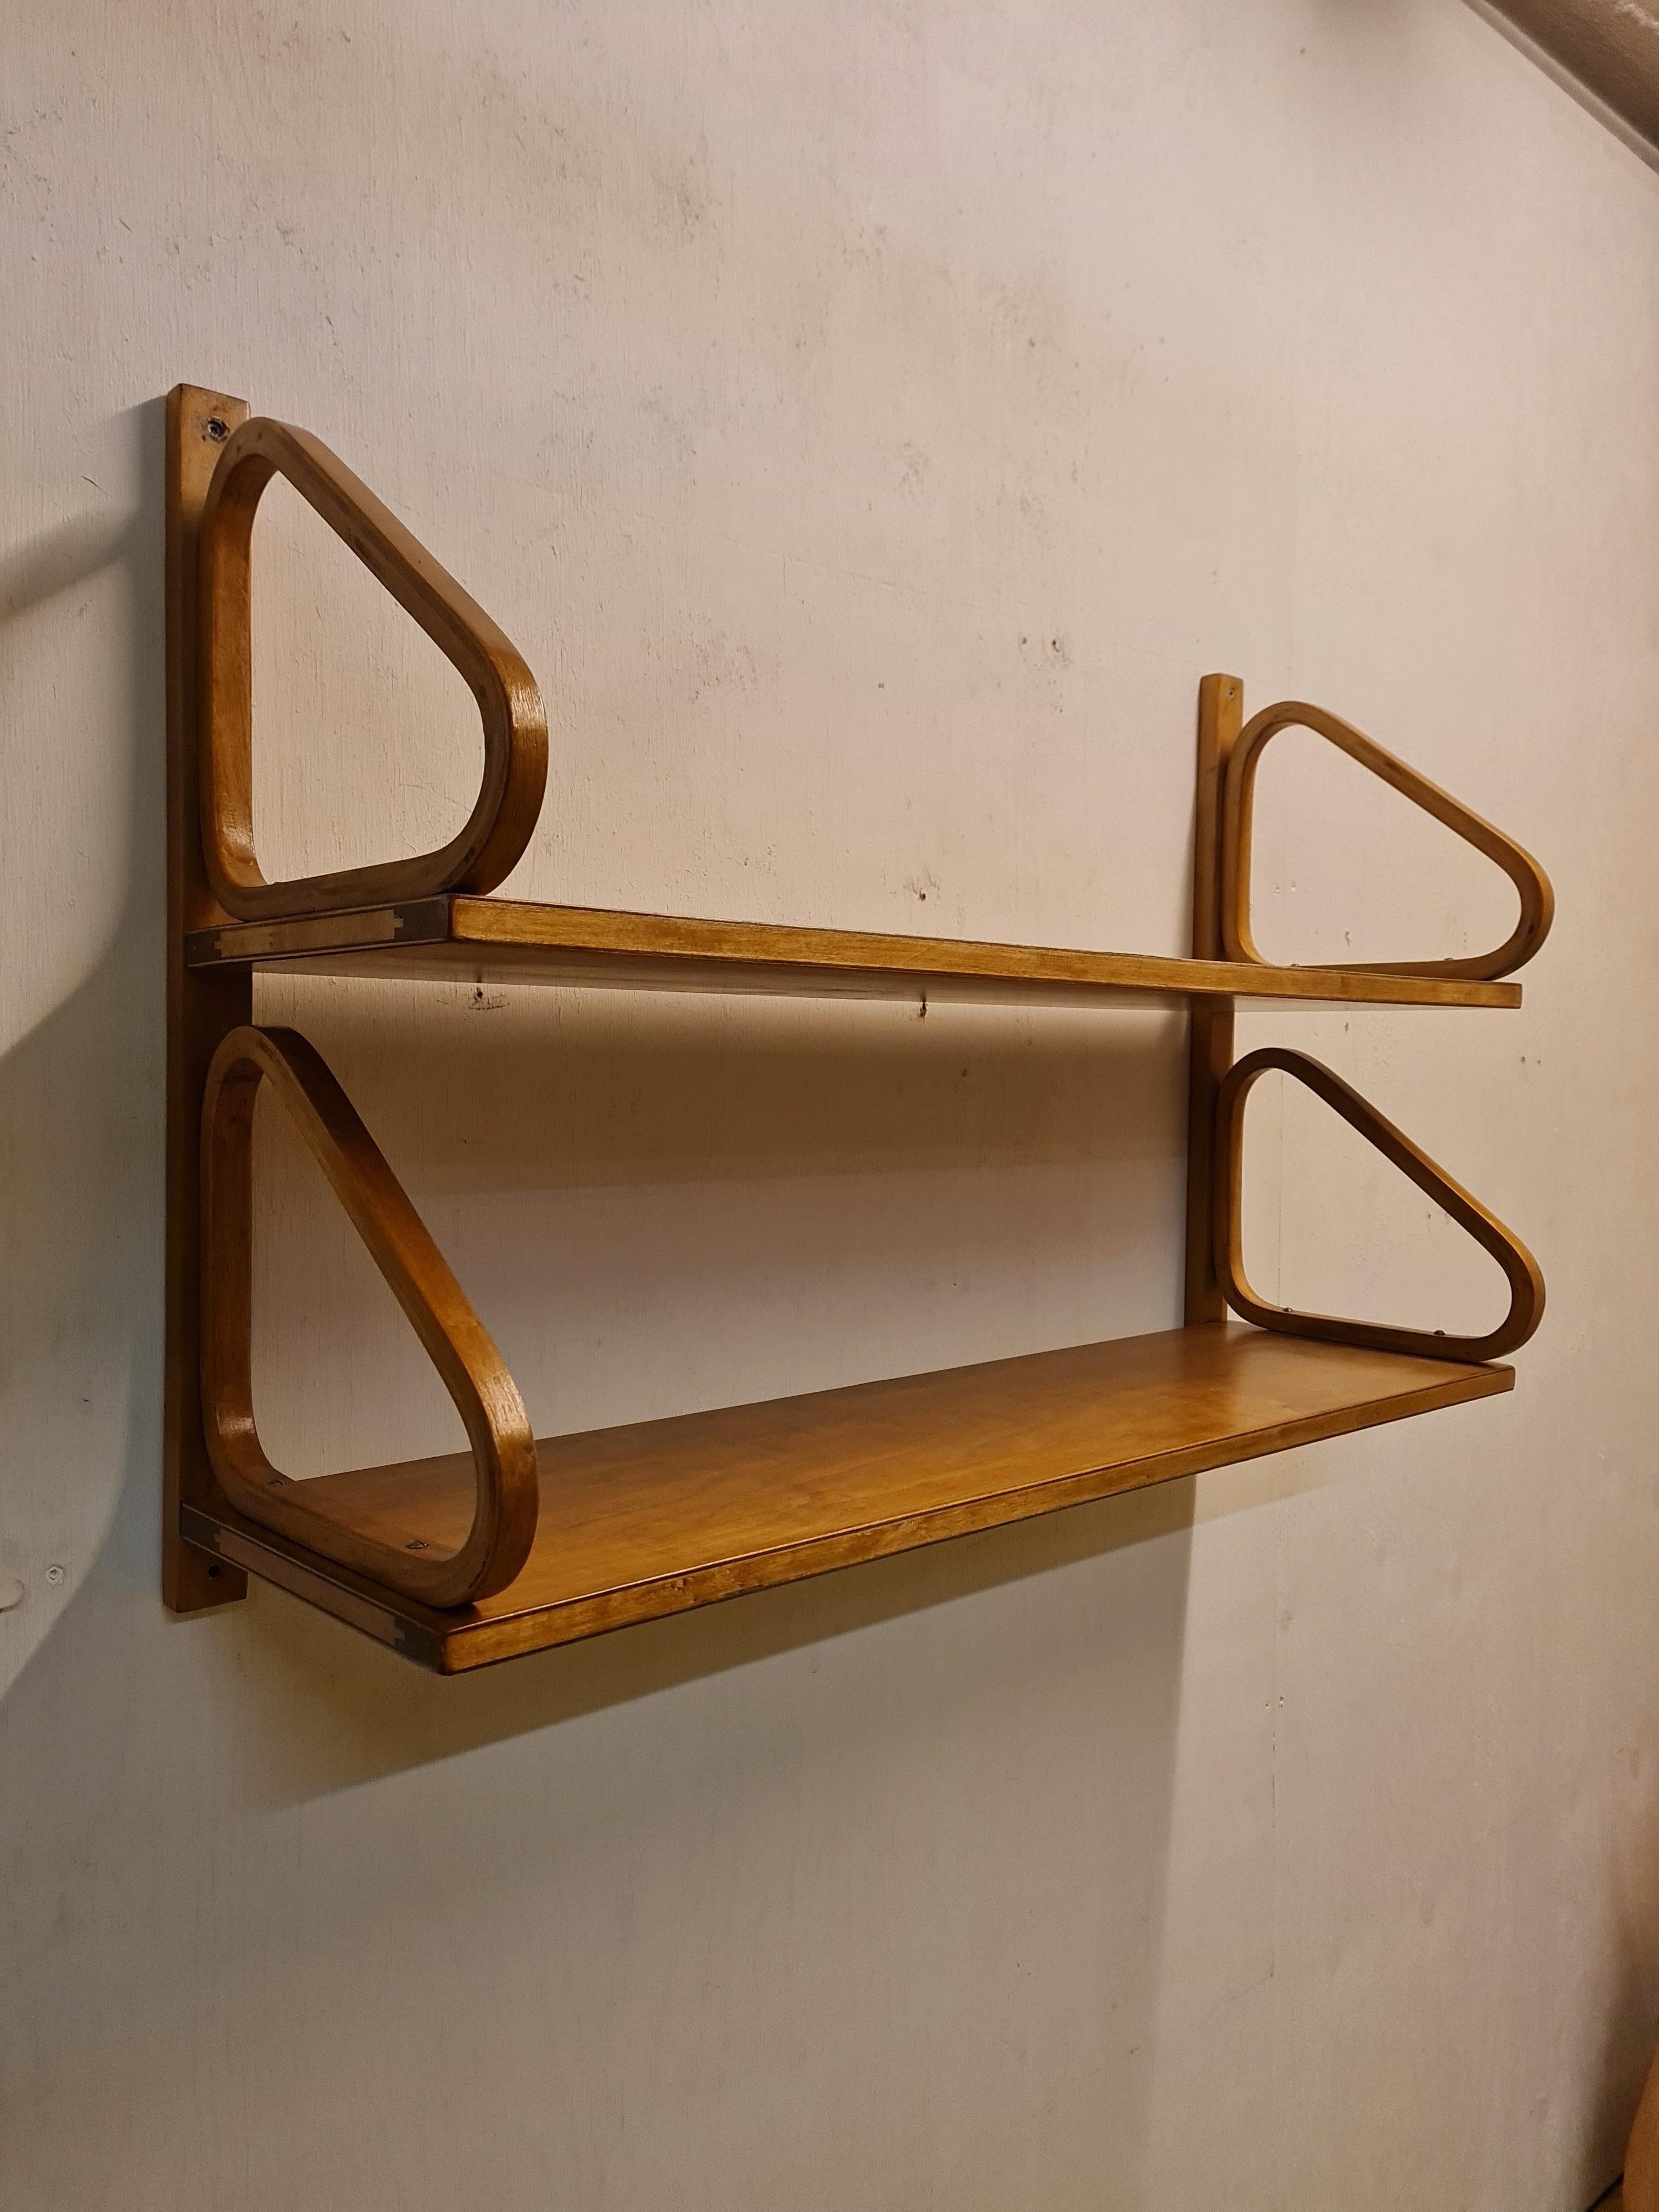 Das ikonische minimalistische Regal von Alvar Aalto in doppelter Ausführung. Dank der hinteren Schiene lässt sich das Regal mit vier statt acht Schrauben leichter aufhängen.
Das Regal stammt aus der Zeit vor Mitte der 1950er Jahre und ist mit